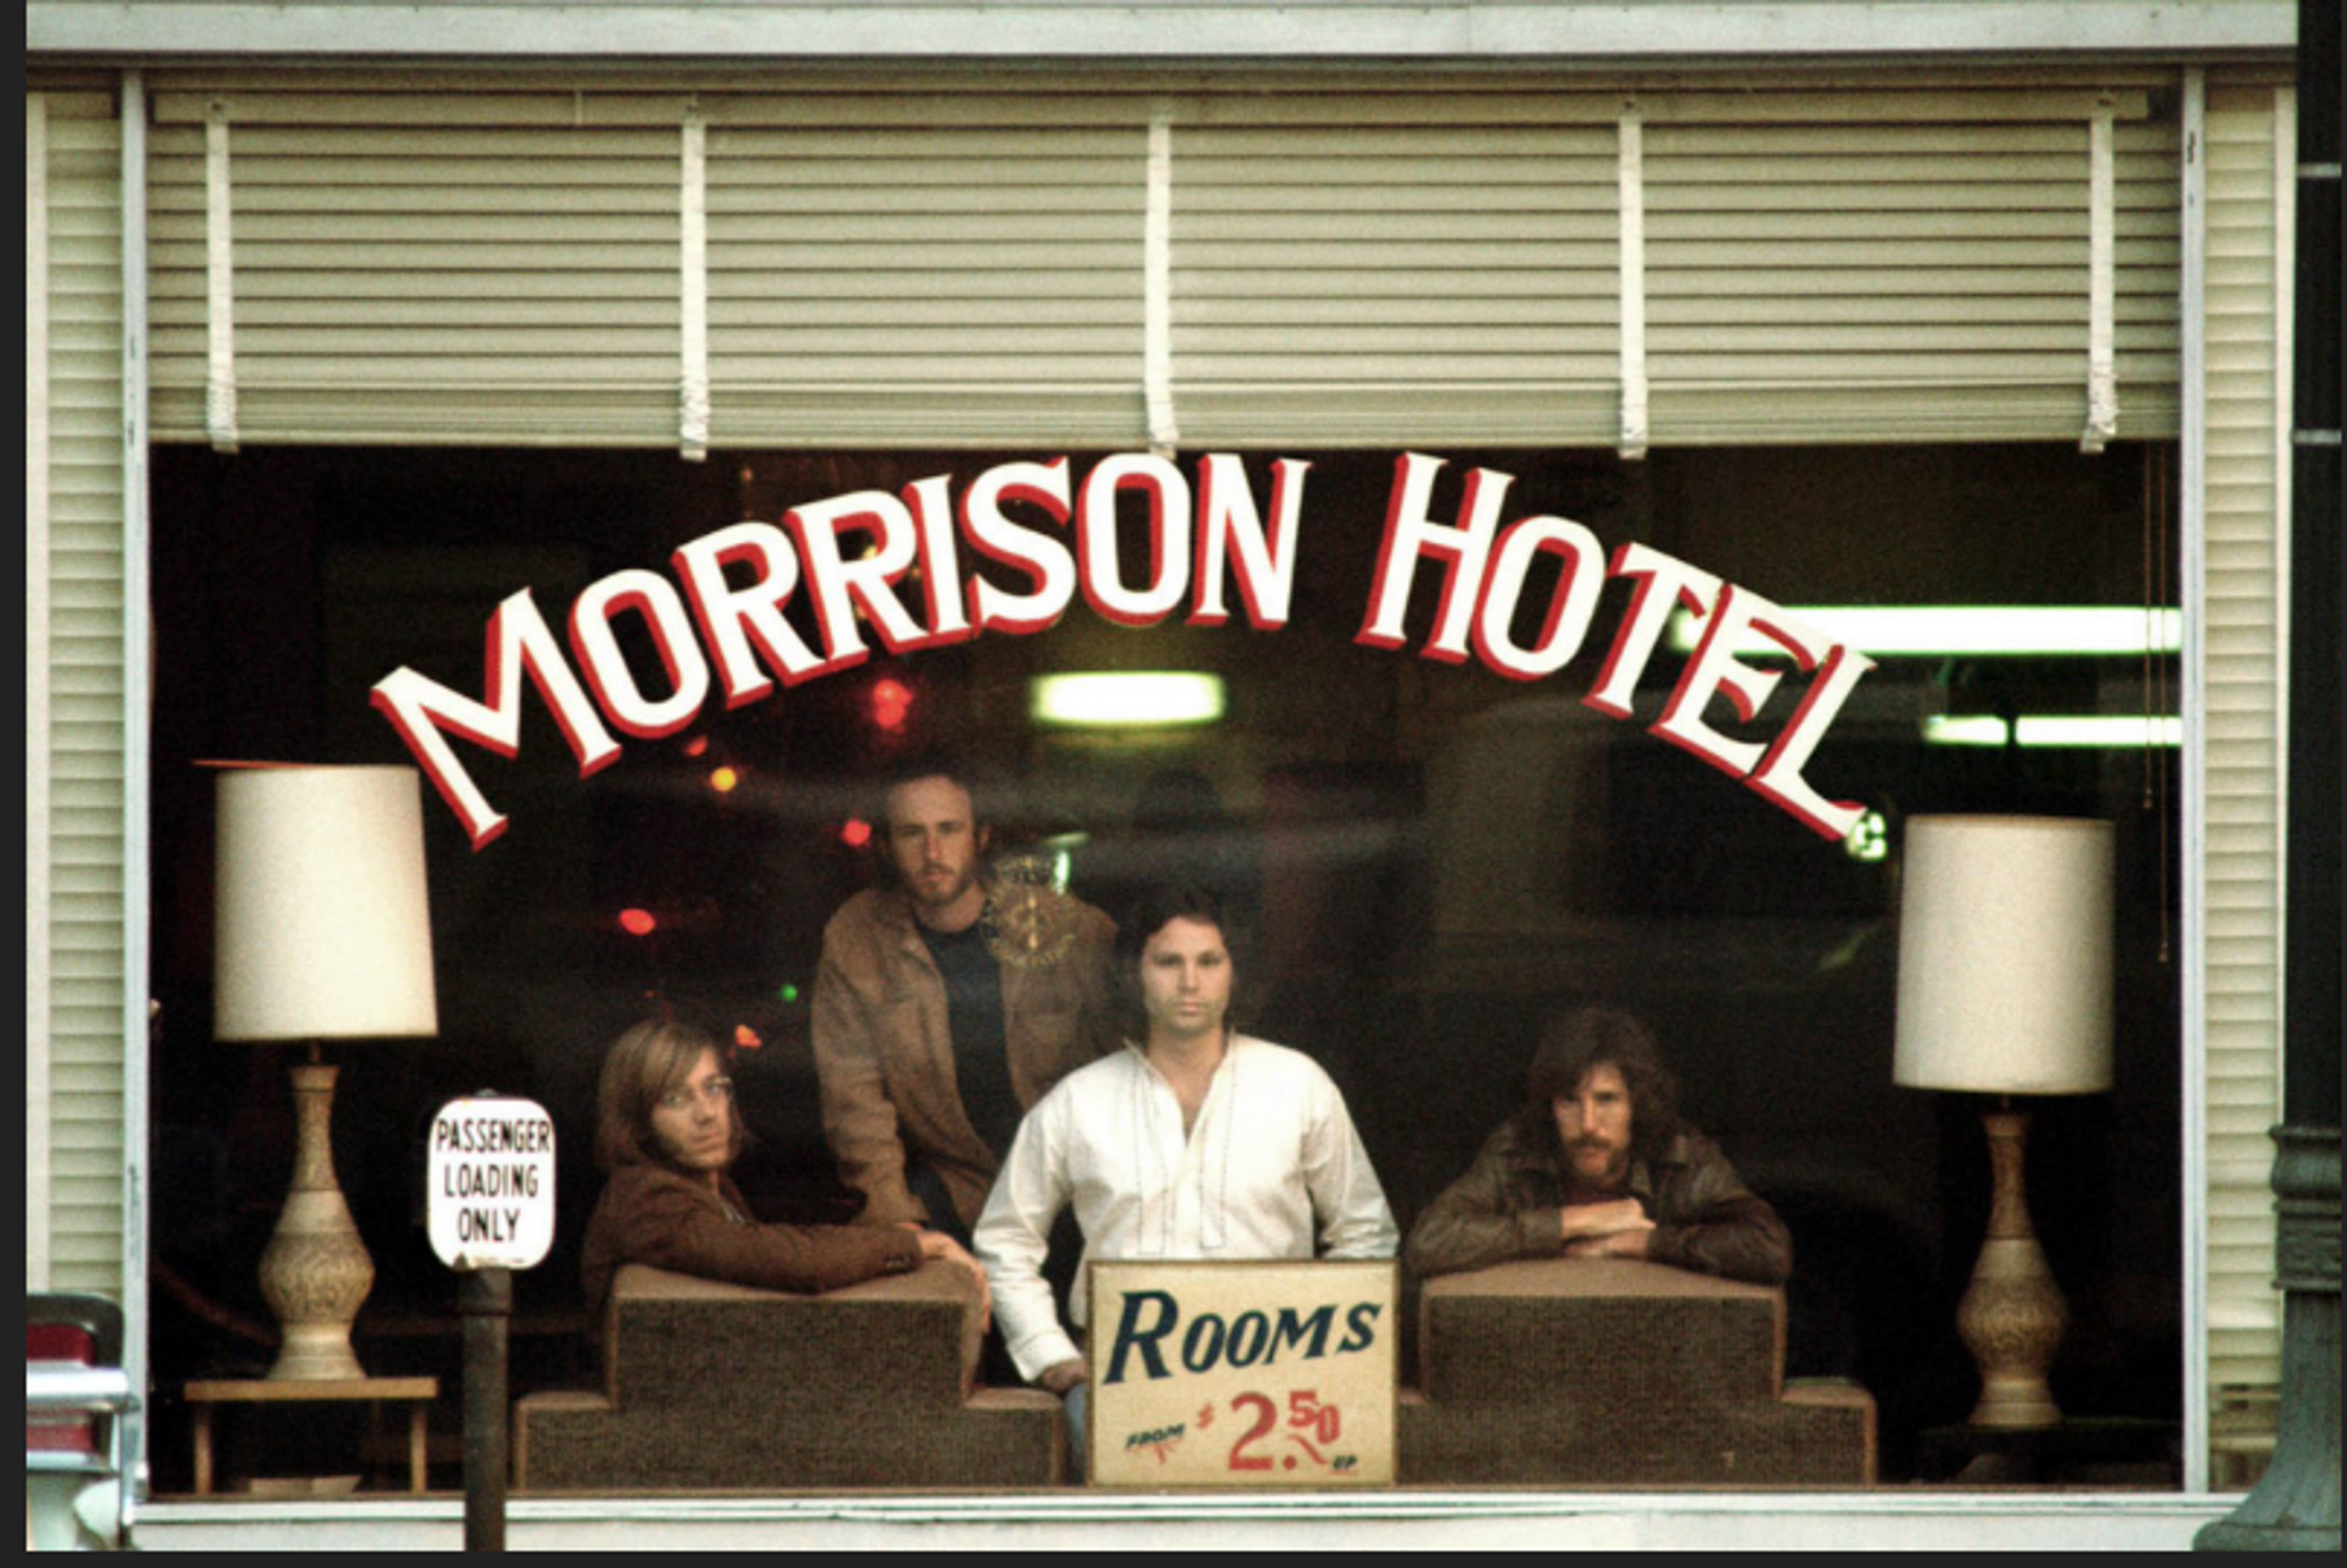 Image of the Doors "Morrison Hotel" album, taken through the painted window of the Morrison Hotel lobby. Rooms were $2.50 in 1969.